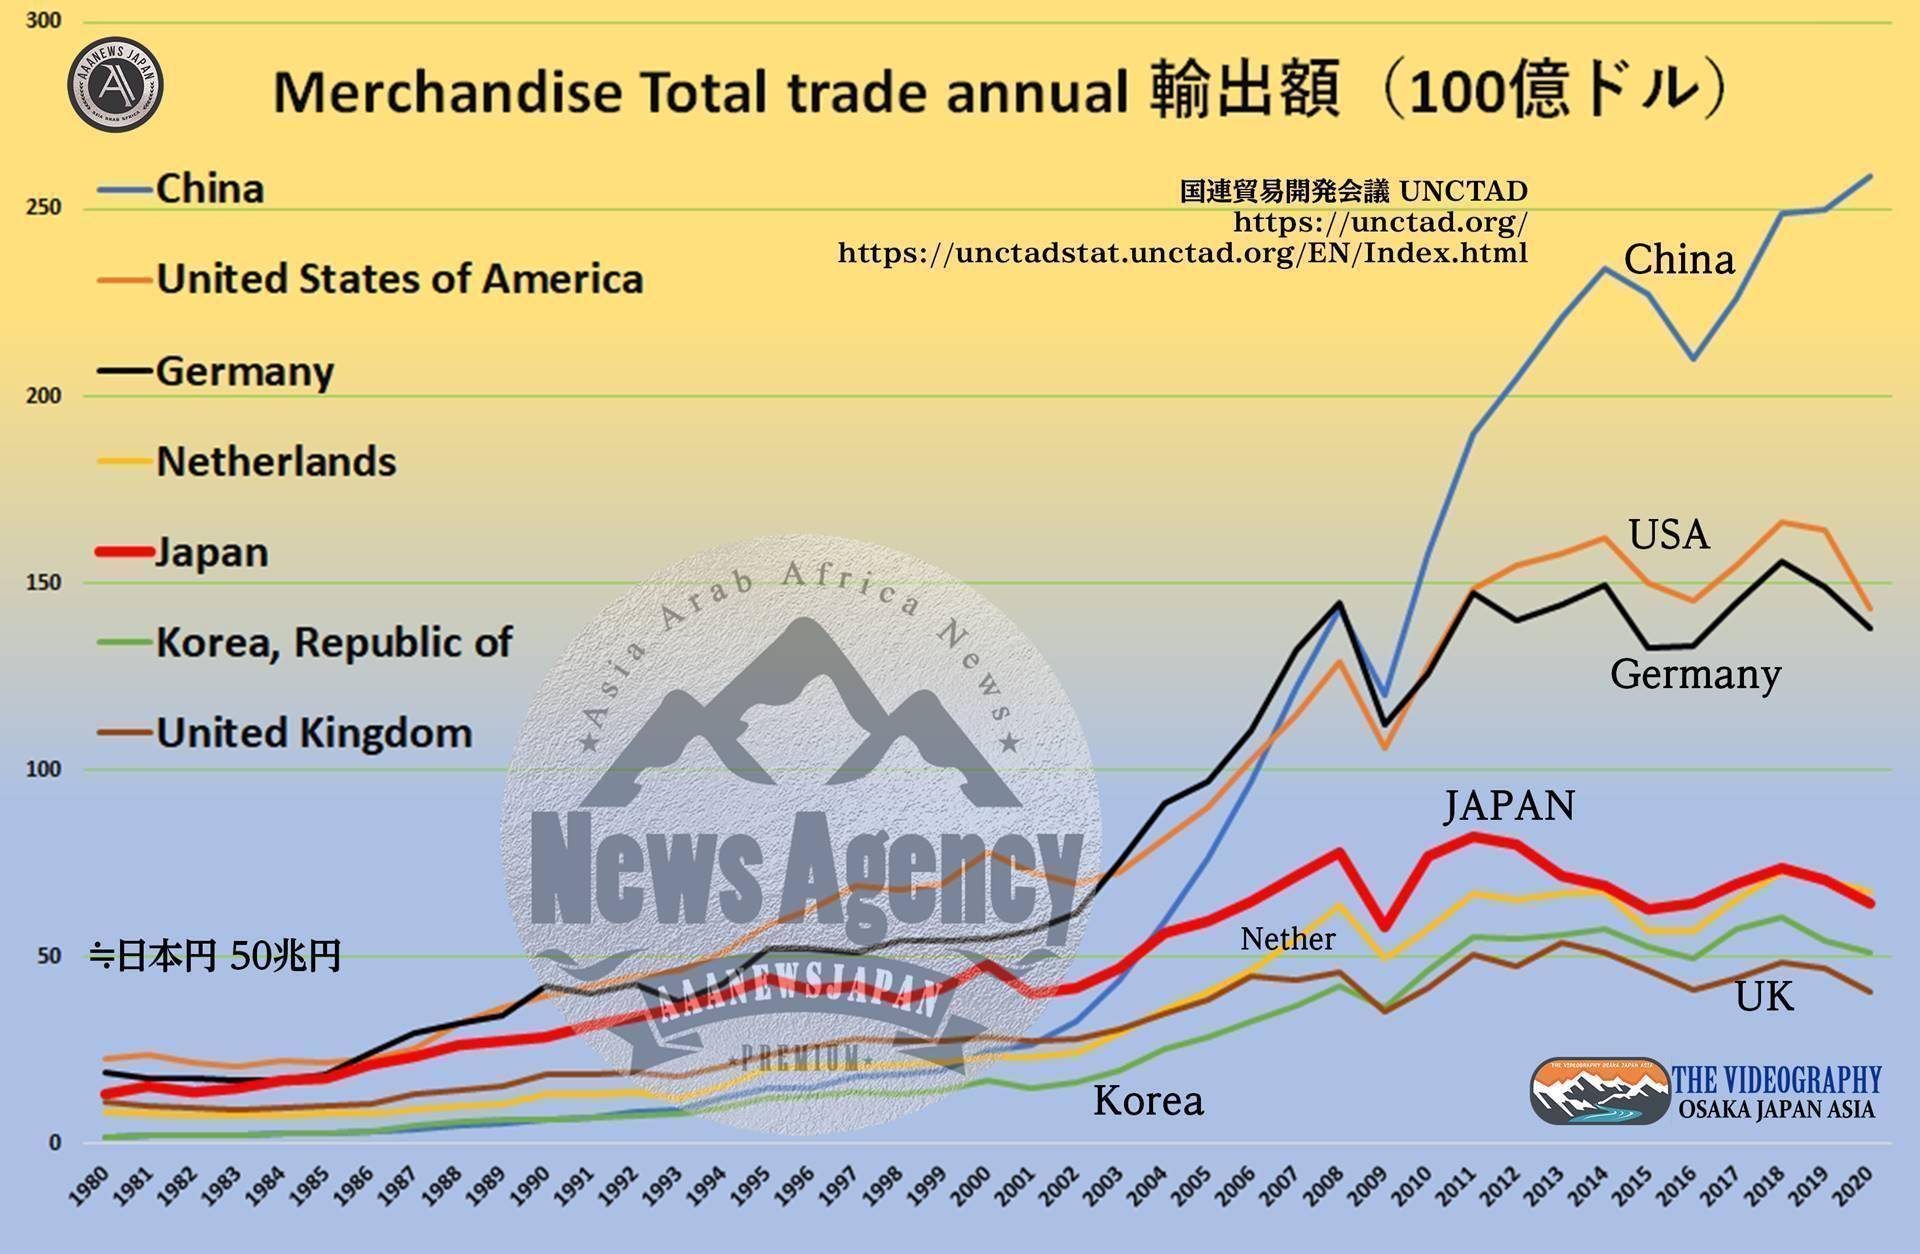 日本の輸出金額 6413億ドル≒67兆3365億円 ※1ドル105円。 貿易輸出額 世界1位 中国 2000円～ 急進 急上昇 ドイツ アメリカ 2000円以降 上昇維持 日本 リーマンショック以降 成長鈍化